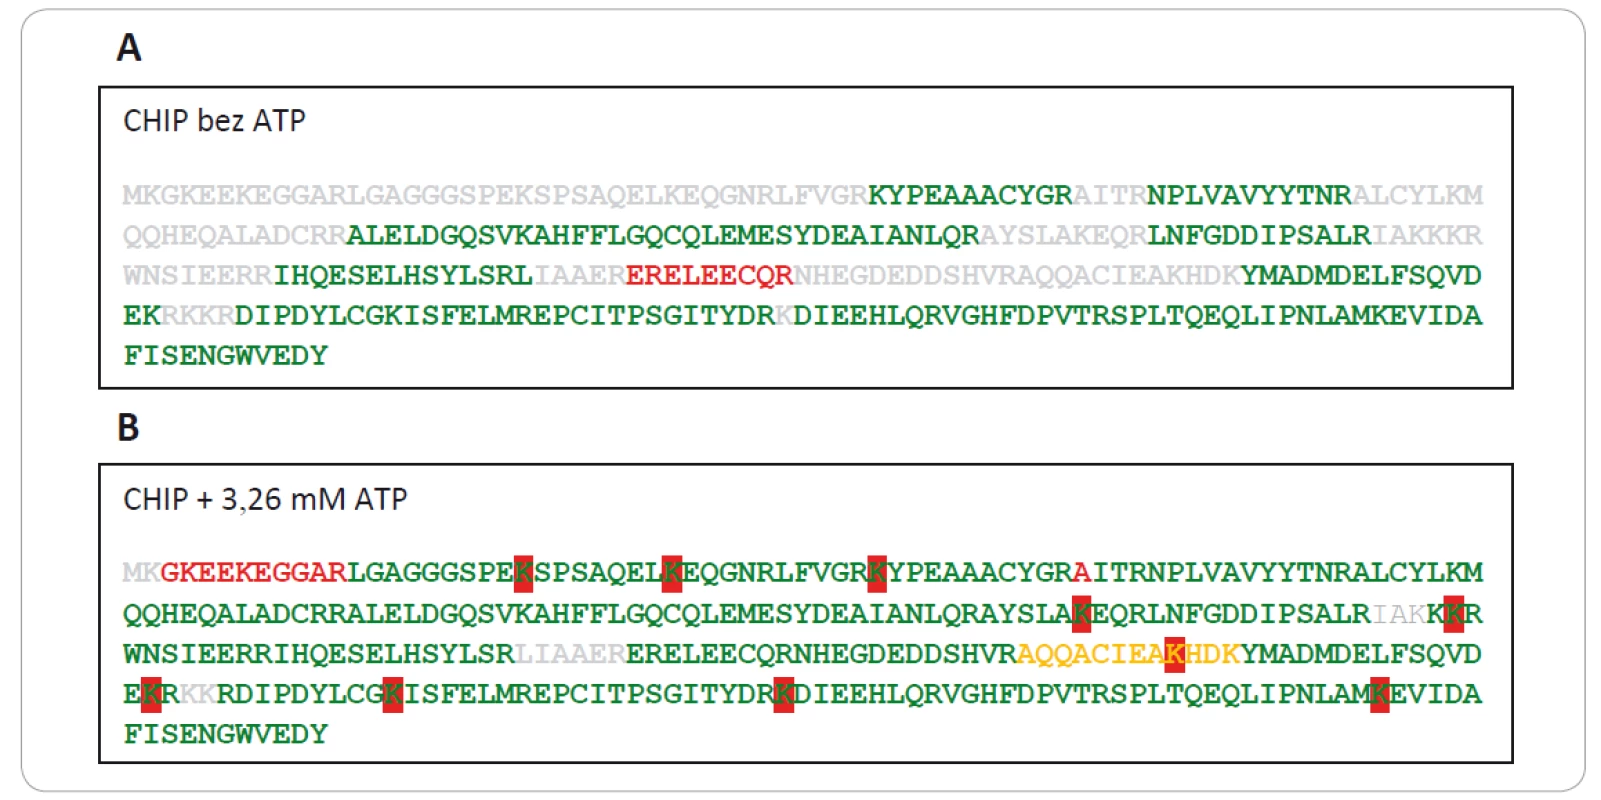 Na obrázku je červenou farbou zvýraznená ubikvitinácia lyzínov v sekvencii CHIP-u s prídavkom (1B) a bez prídavku ATP (1A)
do ubikvitínačnej reakčnej zmesi. Peptidy s vysokou konfi denciou (pep. konfi dencia > 95 %) sú znázornené zelenou farbou, peptidy
so stredne vysokou konfi denciou (pep. konfi dencia ≤ 95 % a > 50 %) sú znázornené oranžovou farbou, nízko konfi dentné peptidy
(pep. konfi dencia ≤ 50 %) sú znázornené červenou farbou a neidentifi kované peptidy sivou farbou písma. CHIP je jednoznačne viac
ubikvitínovaný v prítomnosti ATP, zatiaľ čo v neprítomnosti ATP k ubikvitinácii nedochádza.